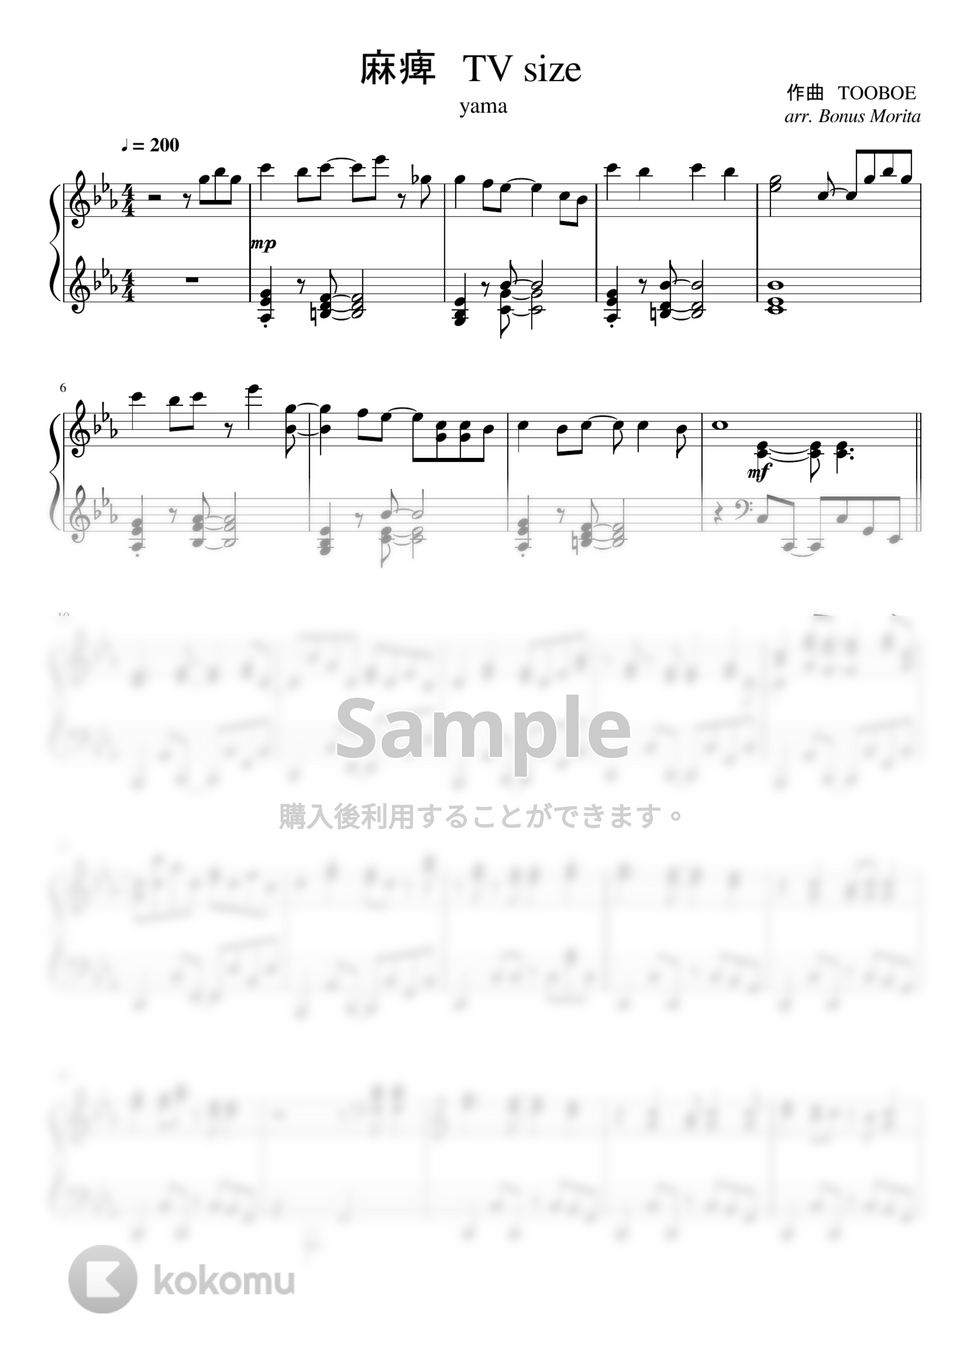 yama - 麻痺 (９０秒サイズ / 『2.43 清陰高校男子バレー部』) by ボーナス森田